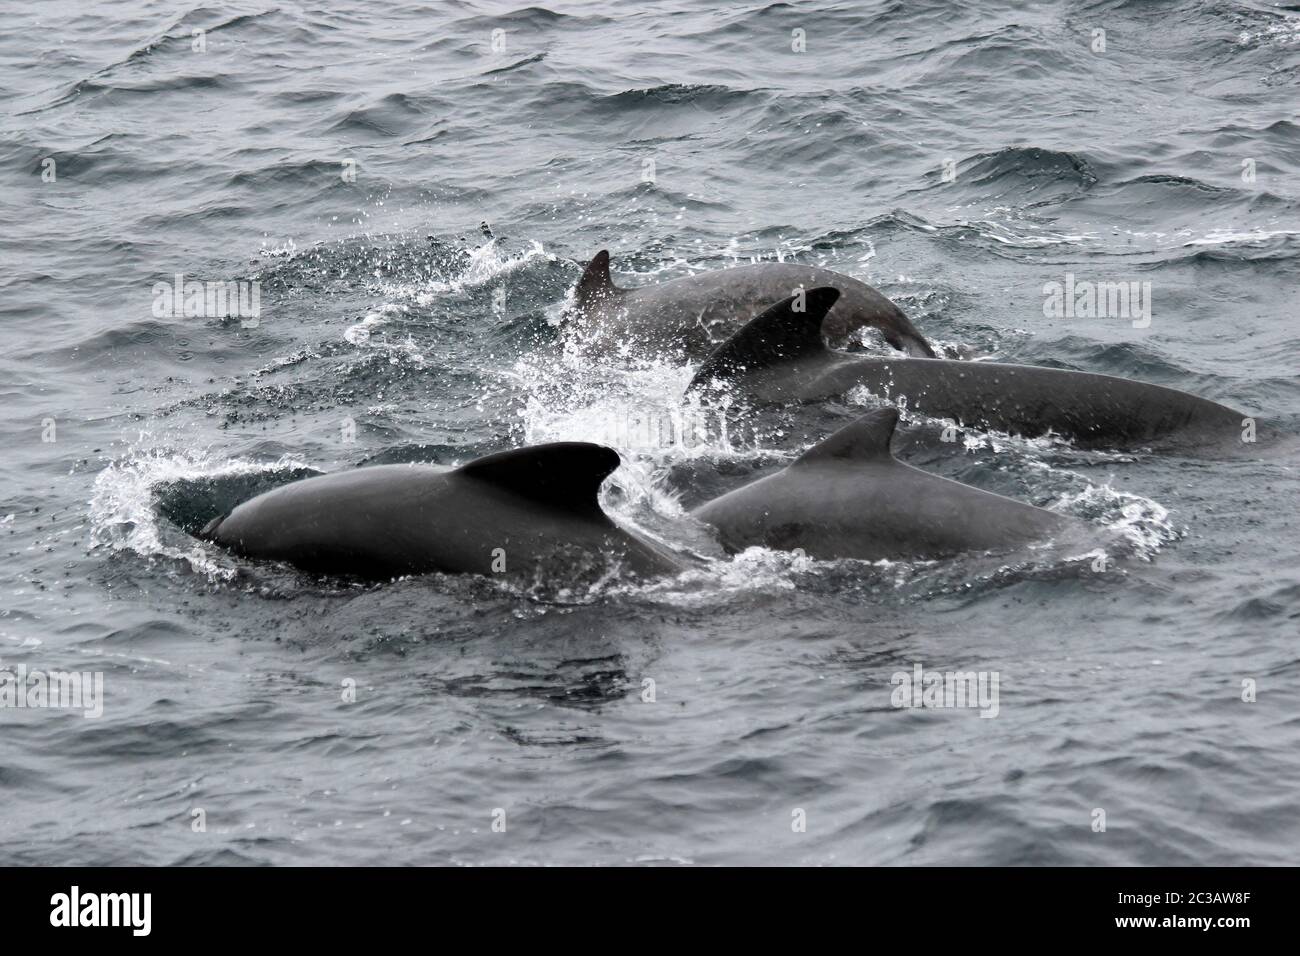 Baleine pilote à longue finale Globicephala melas Rockall Trough, Océan Atlantique, Royaume-Uni Banque D'Images